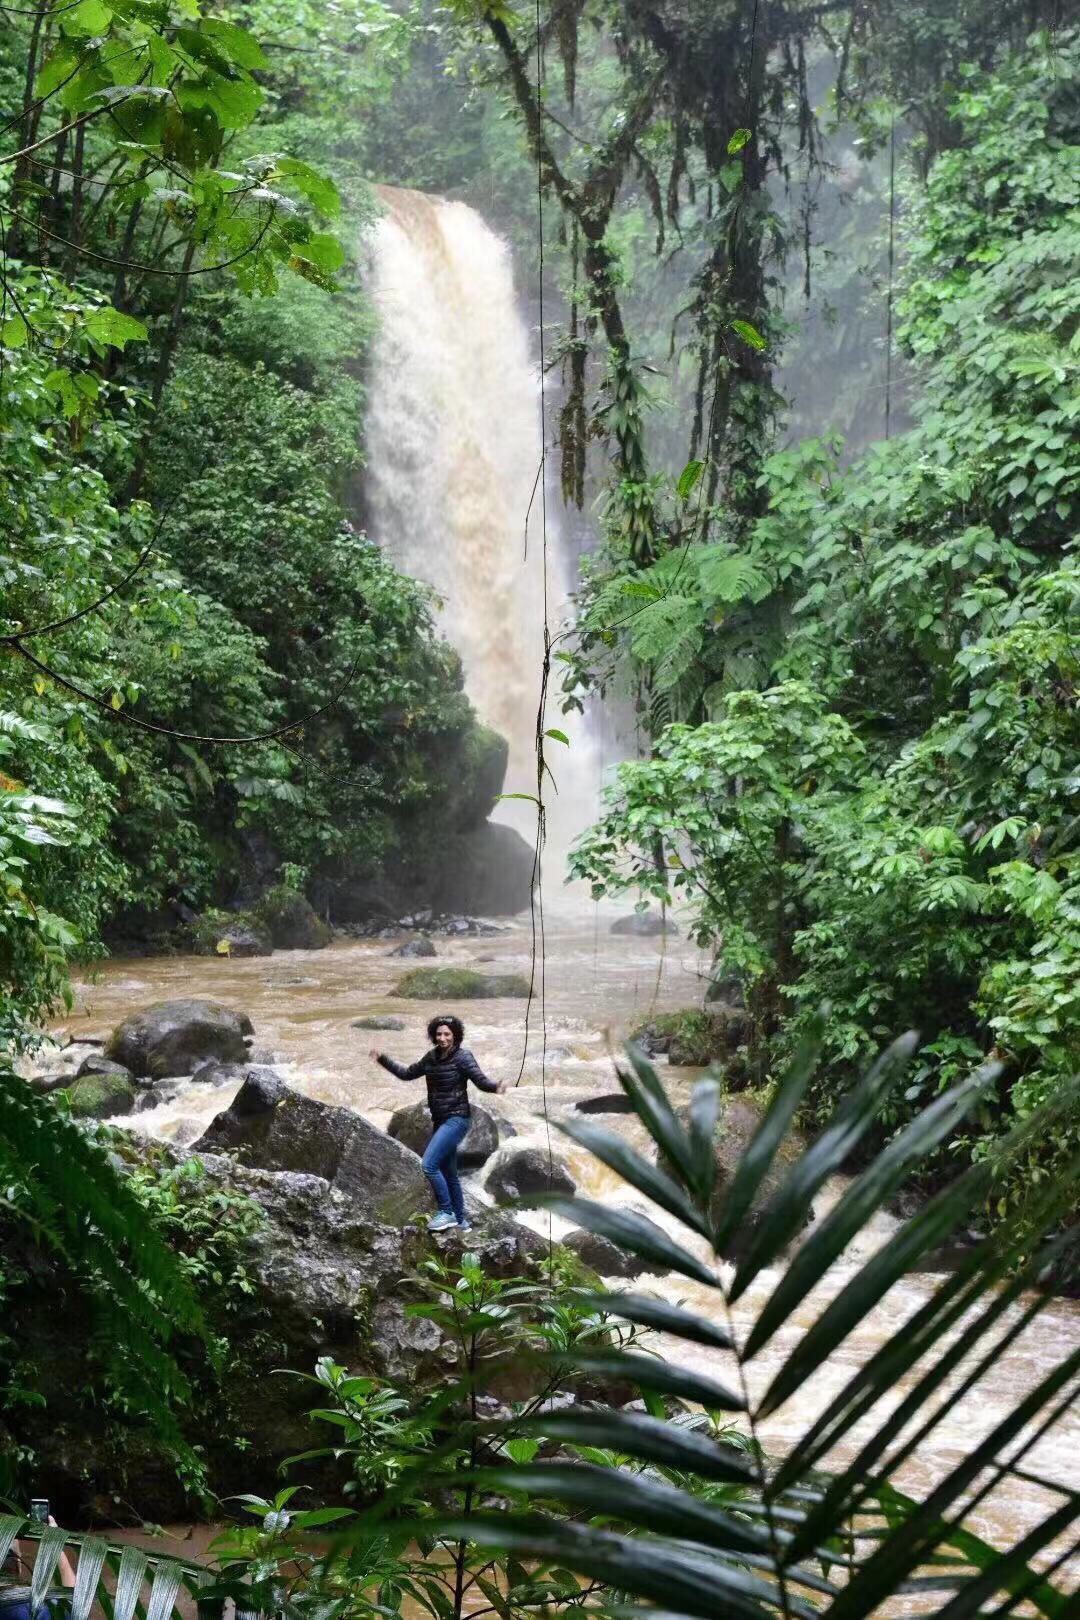 【和平瀑布花园】 哥斯达黎加🇨🇷“和平瀑布花园”是一个充满绿色的自然景观，除了可以观赏特别的瀑布外，